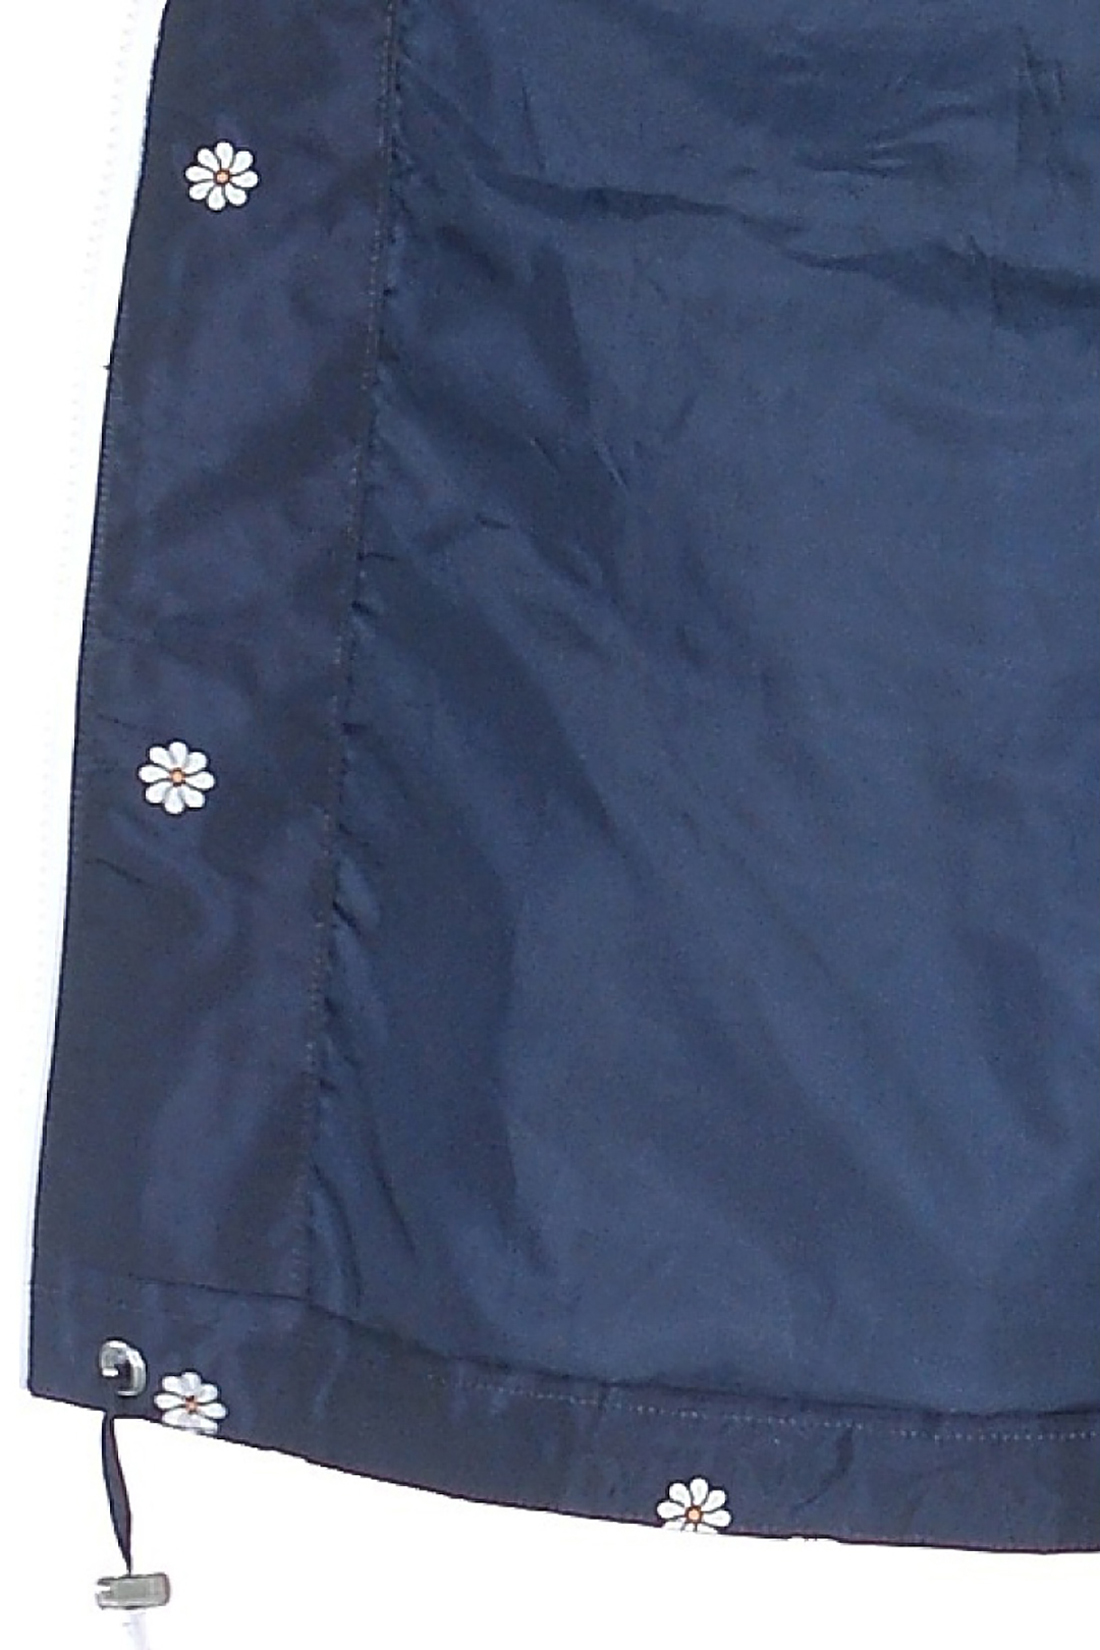 Ветровка с узором в ромашку (арт. baon B108004), размер M, цвет dark navy printed#синий Ветровка с узором в ромашку (арт. baon B108004) - фото 4